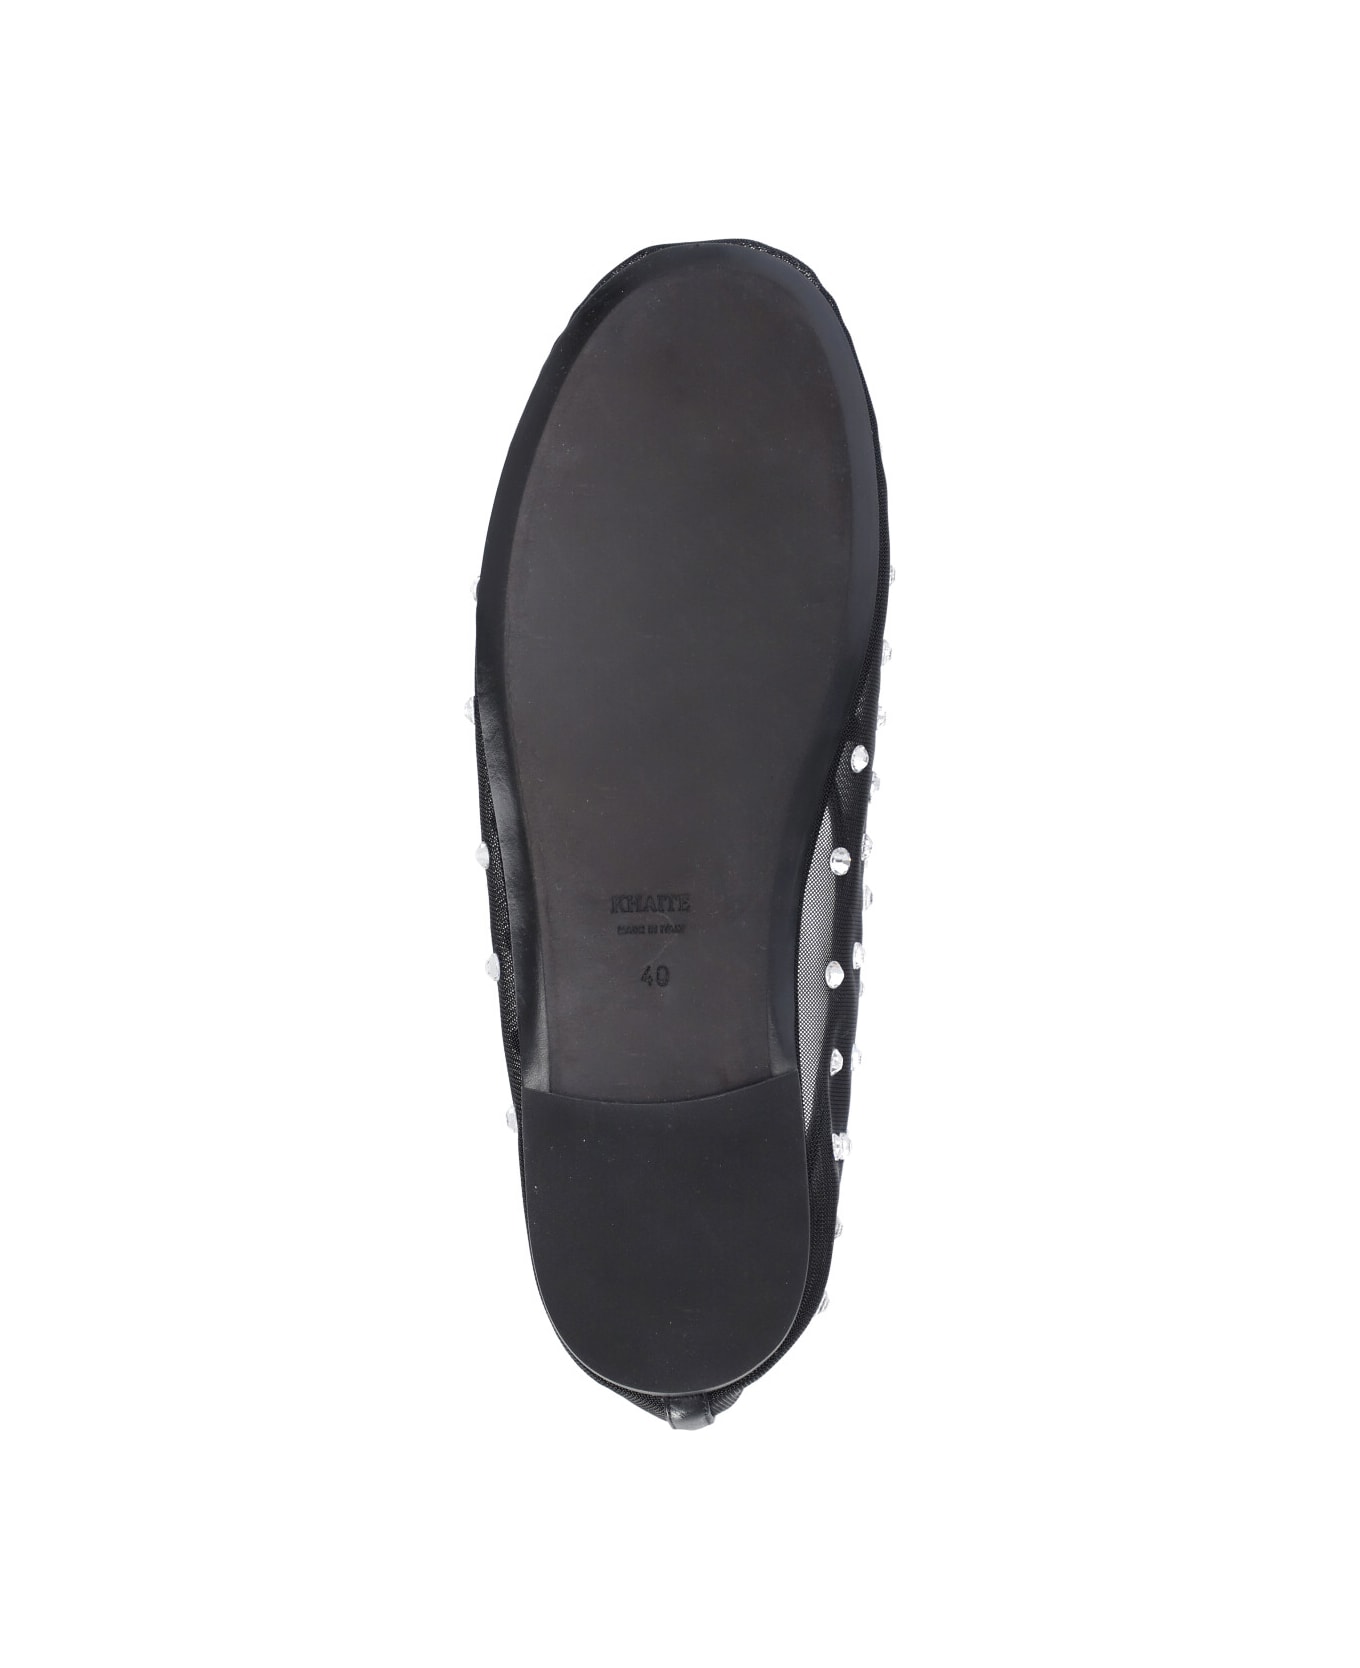 Khaite Marcy Flats Ballet Shoes - Black フラットシューズ